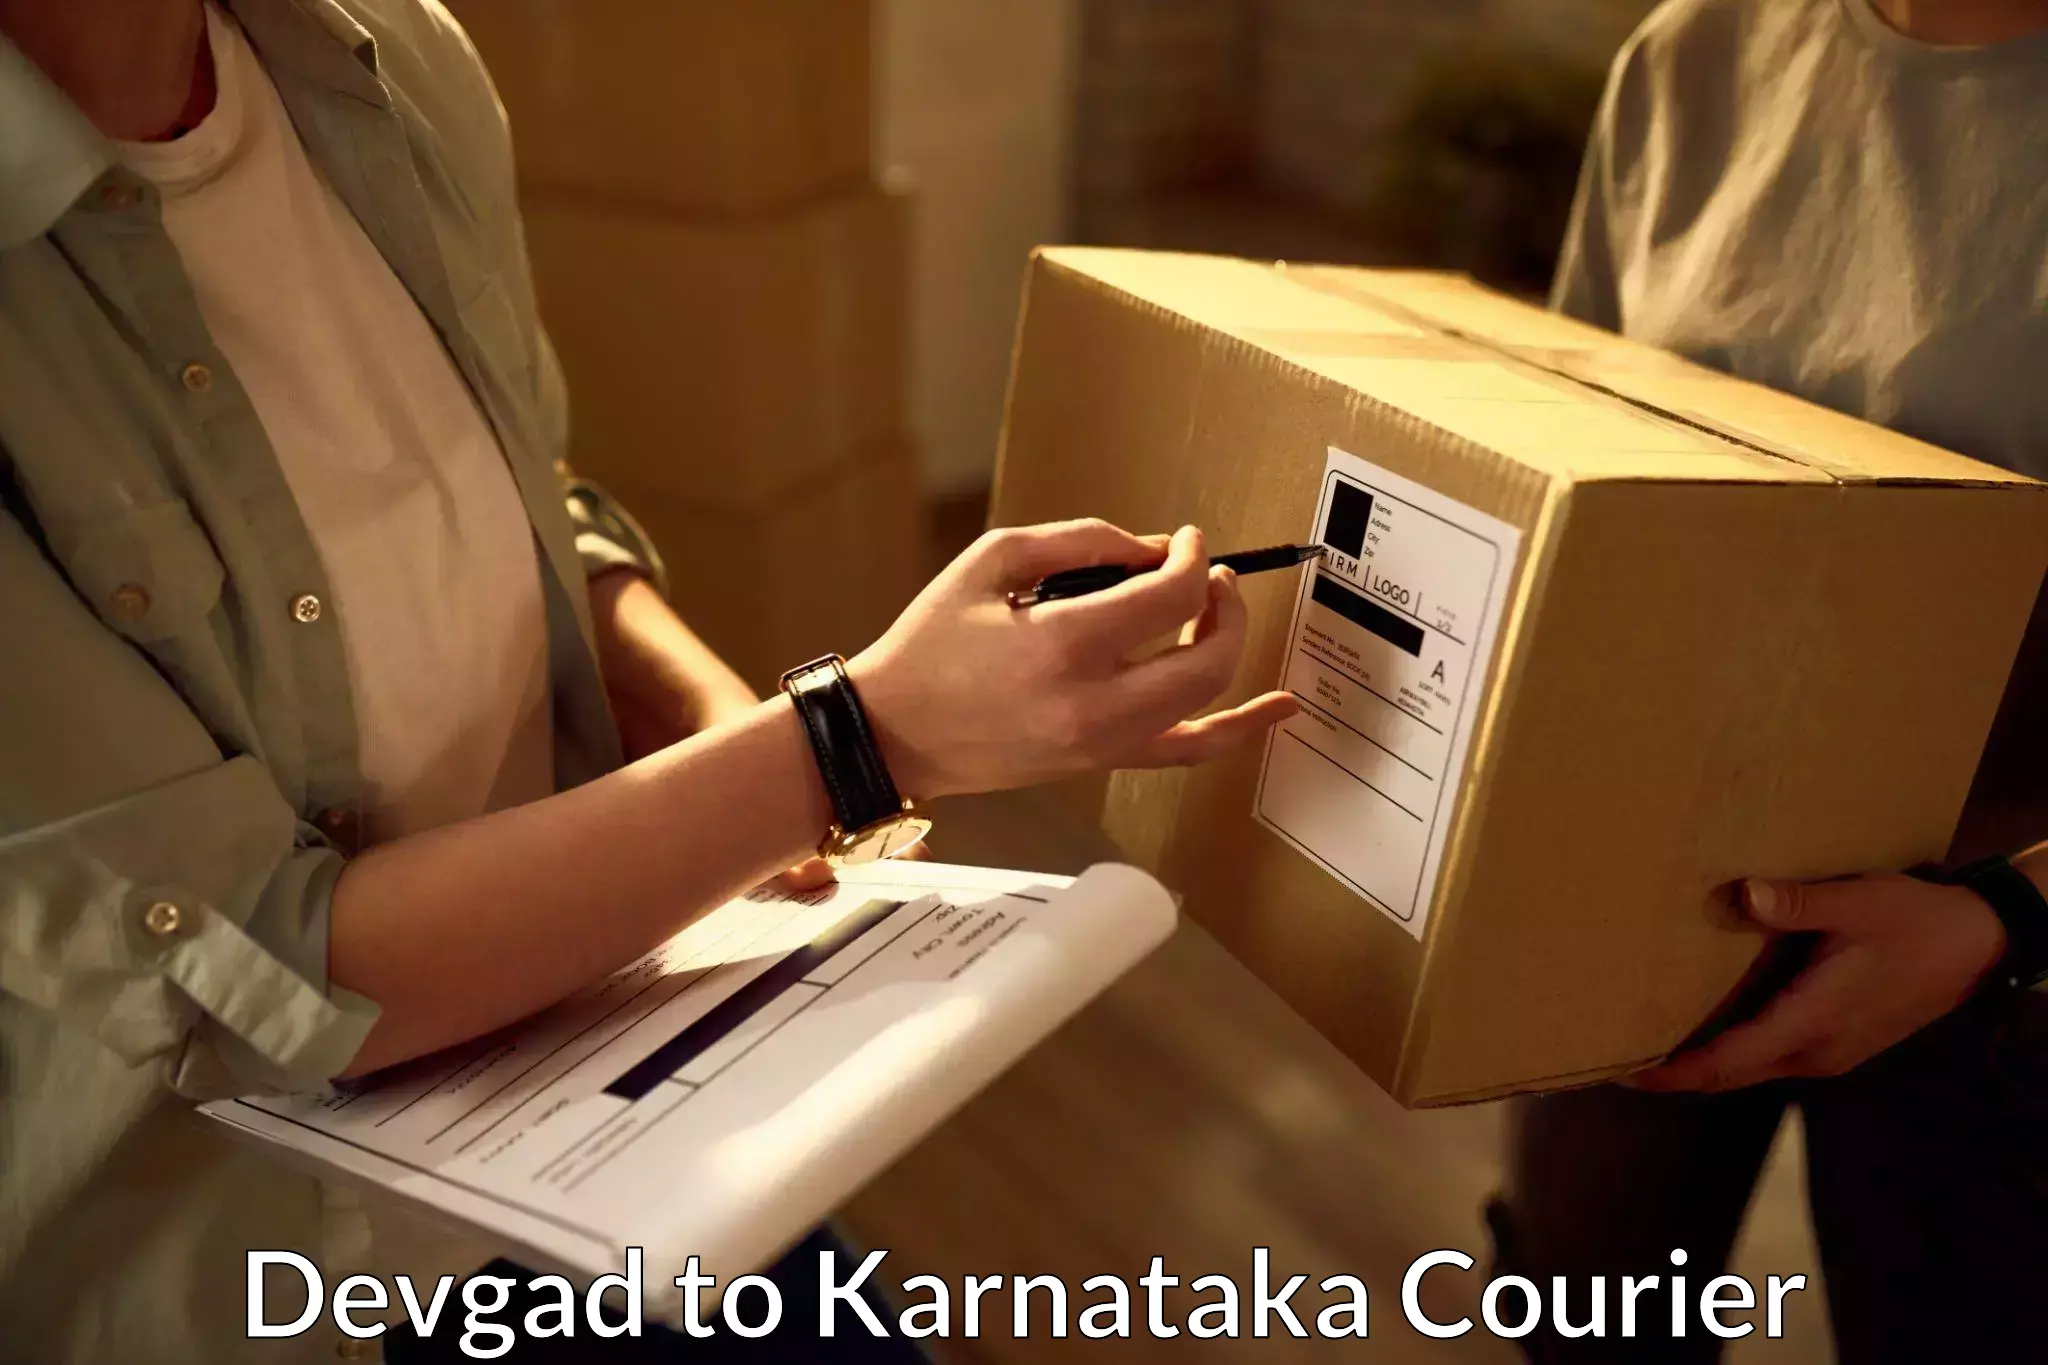 Courier service partnerships Devgad to Mangalore Port